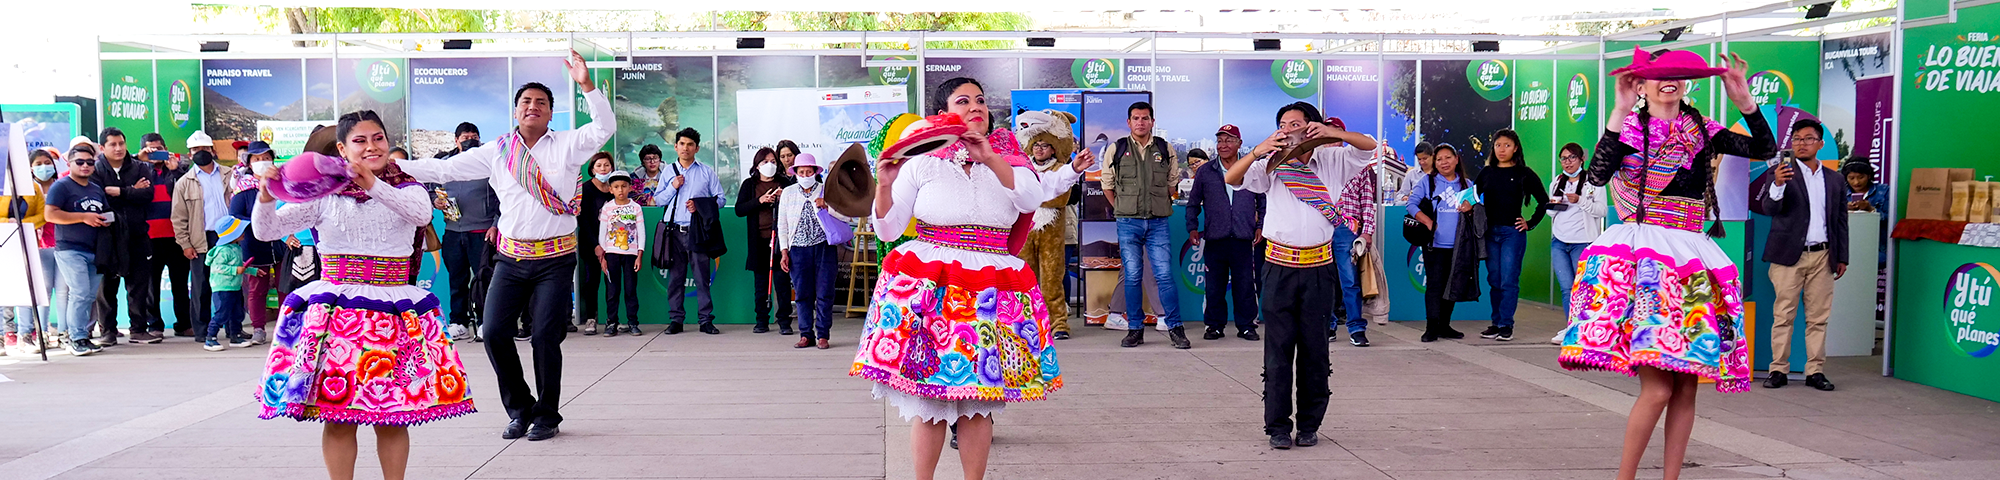 ¡Prepárate para la feria “Lo bueno de viajar” en Huancayo!